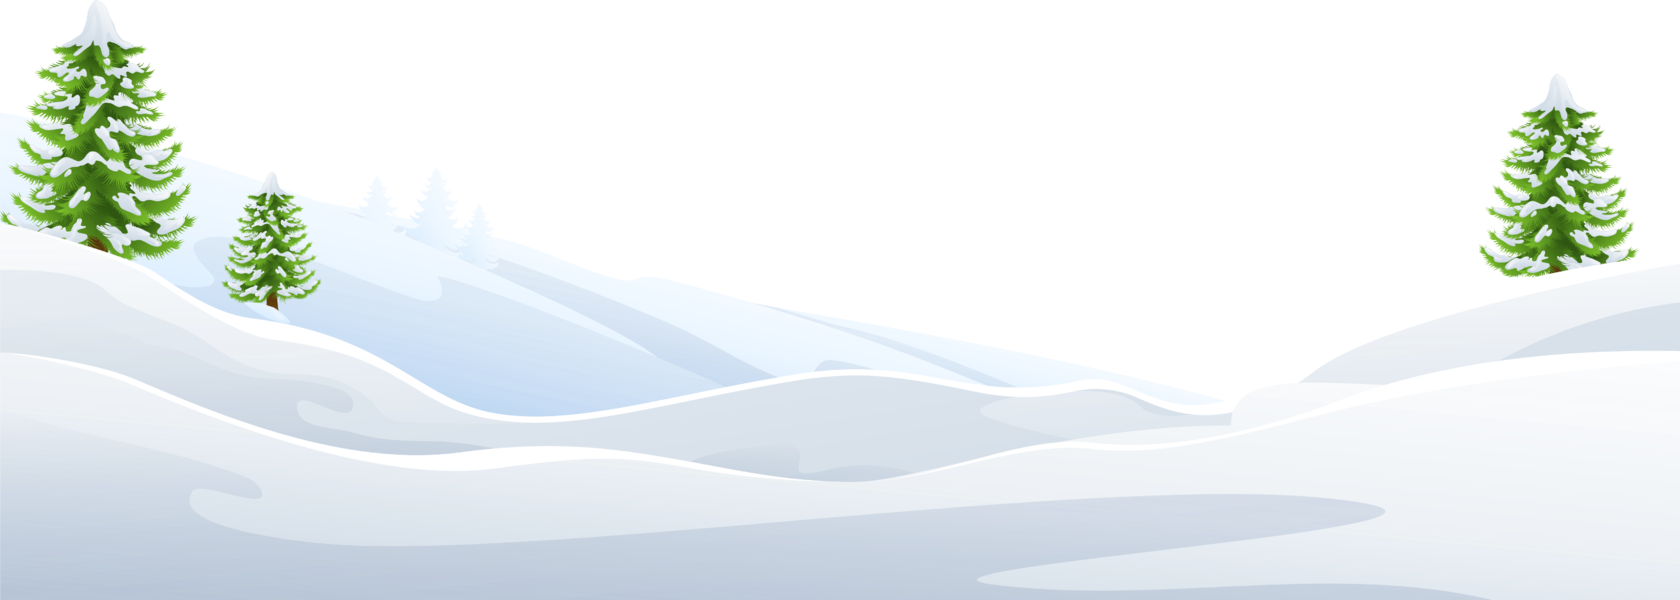 Сугробы снега на прозрачном фоне. Снег сугробы. Снег вектор. Сугробы для фотошопа. Сугроб рисунок